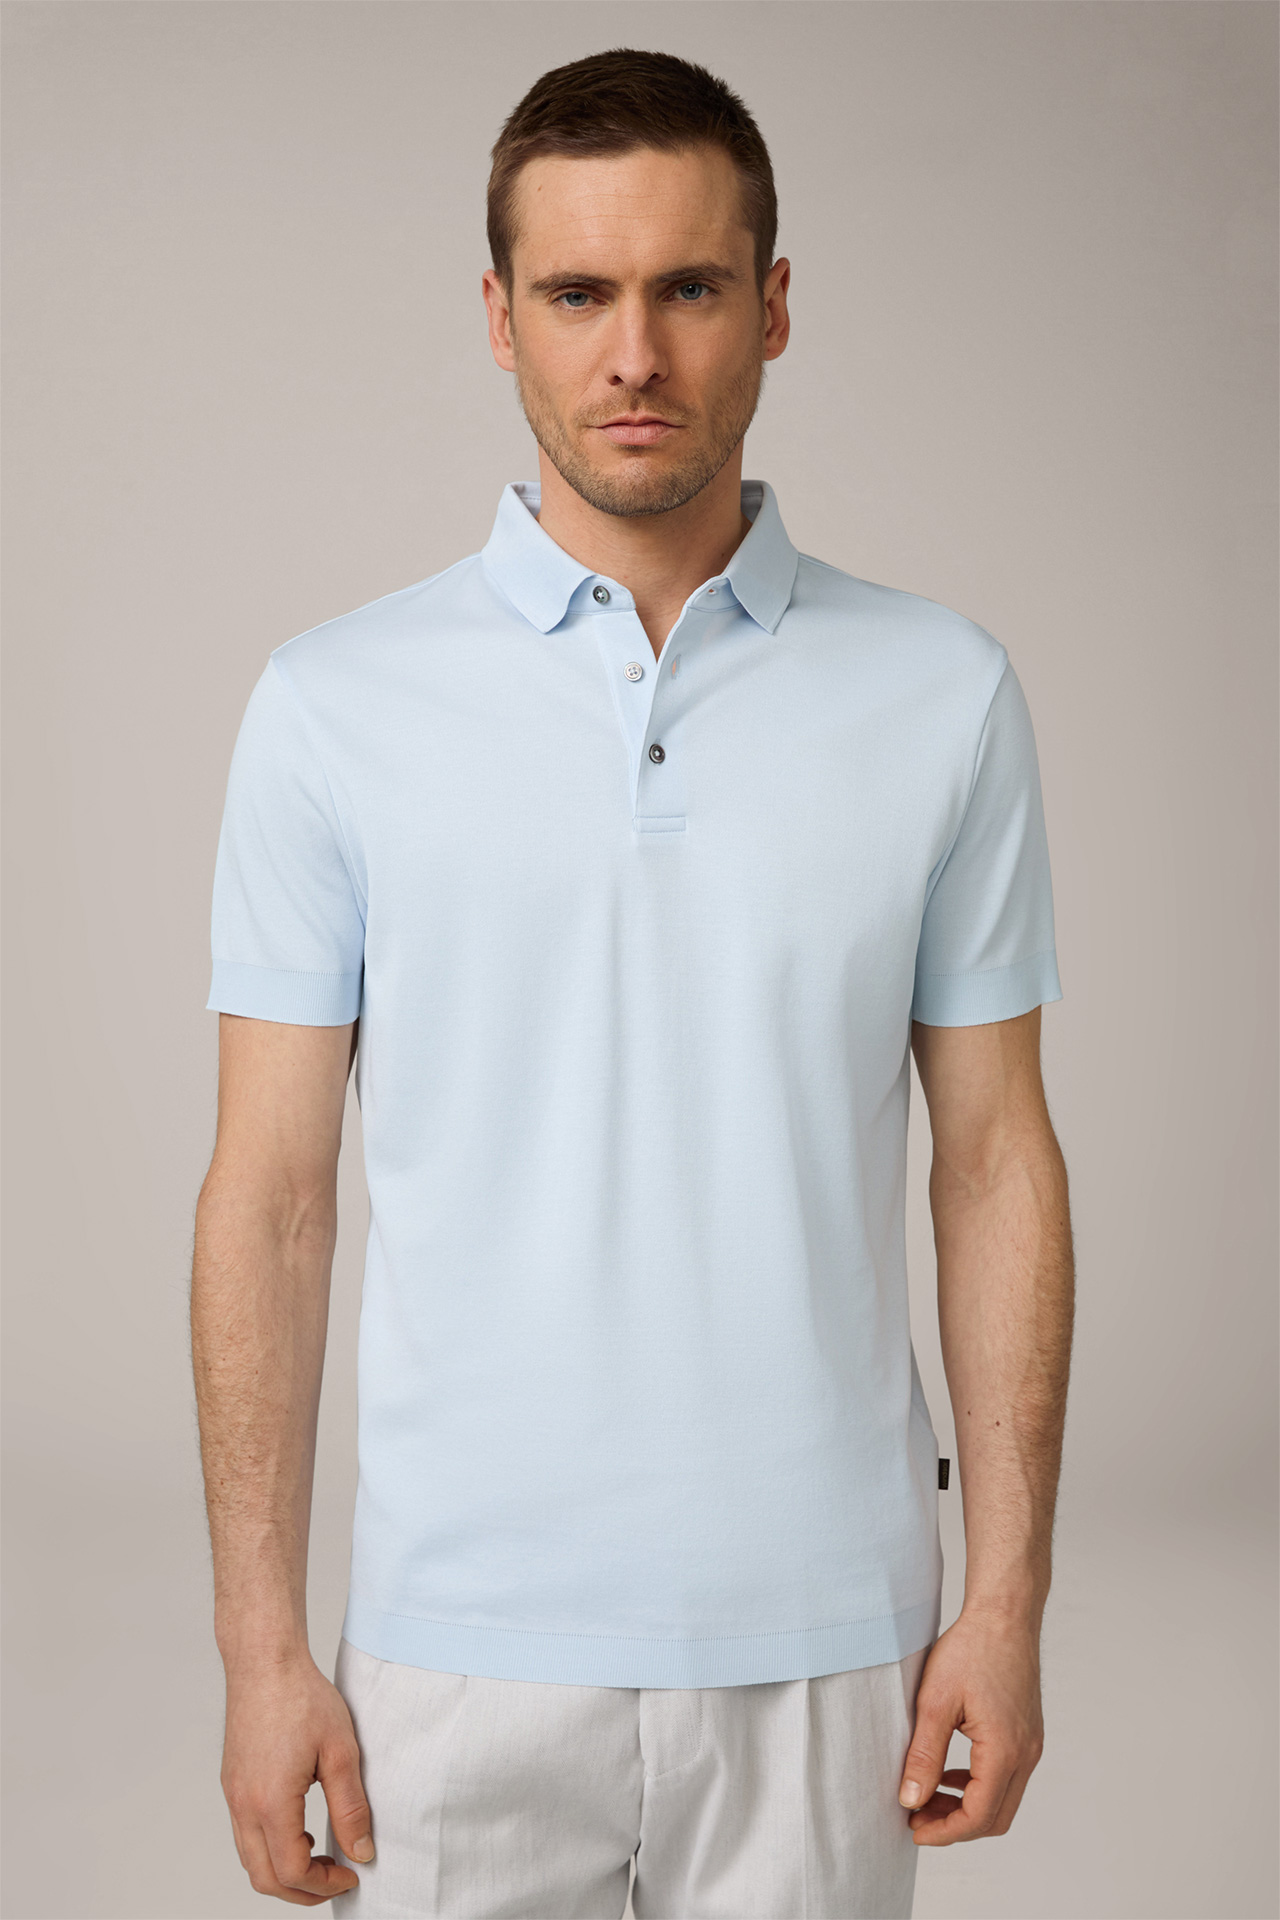 Floro Cotton Polo Shirt in Light Blue 